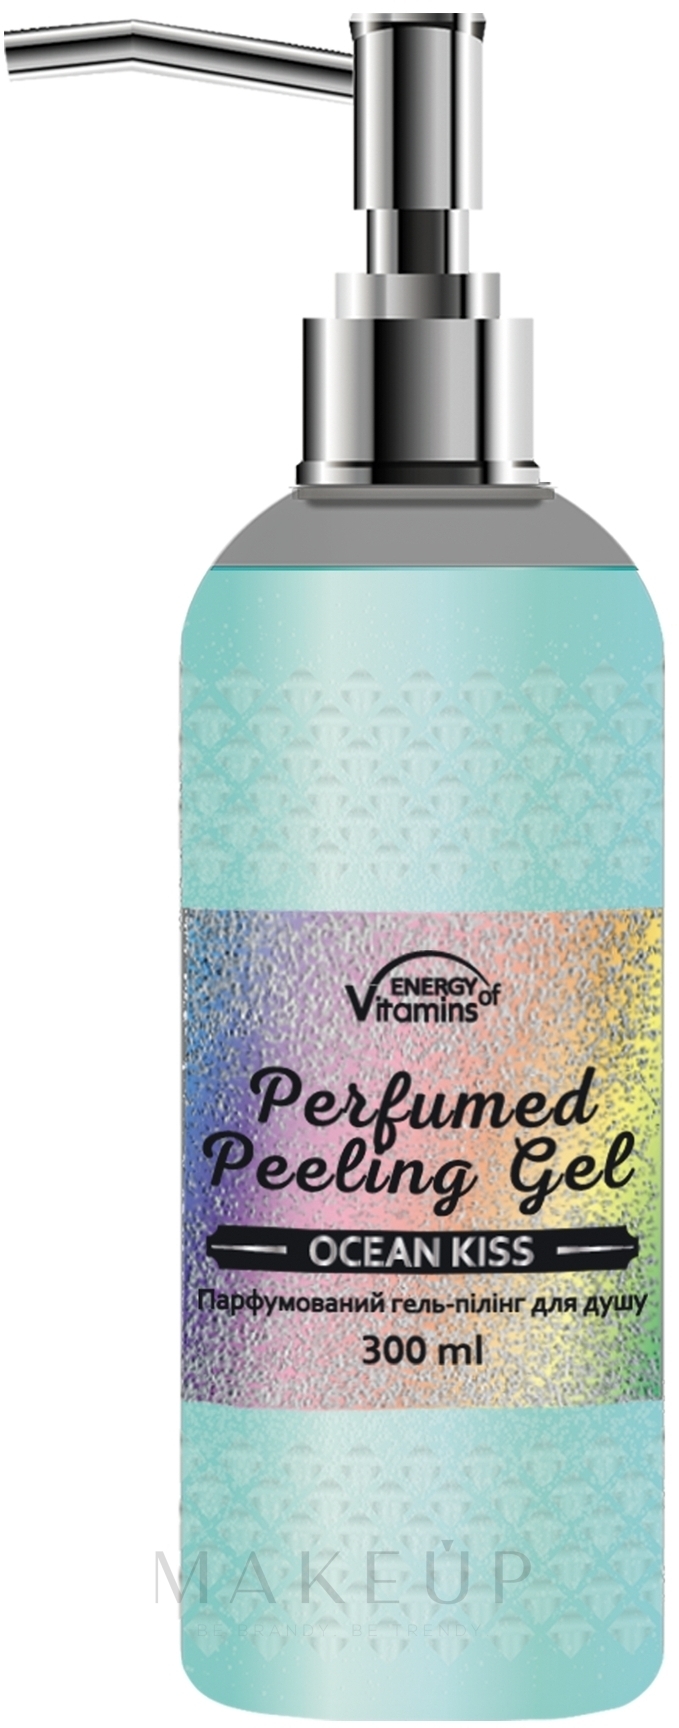 Parfümiertes Duschgel-Peeling - Energy of Vitamins Perfumed Peeling Gel Ocean Kiss — Bild 300 ml